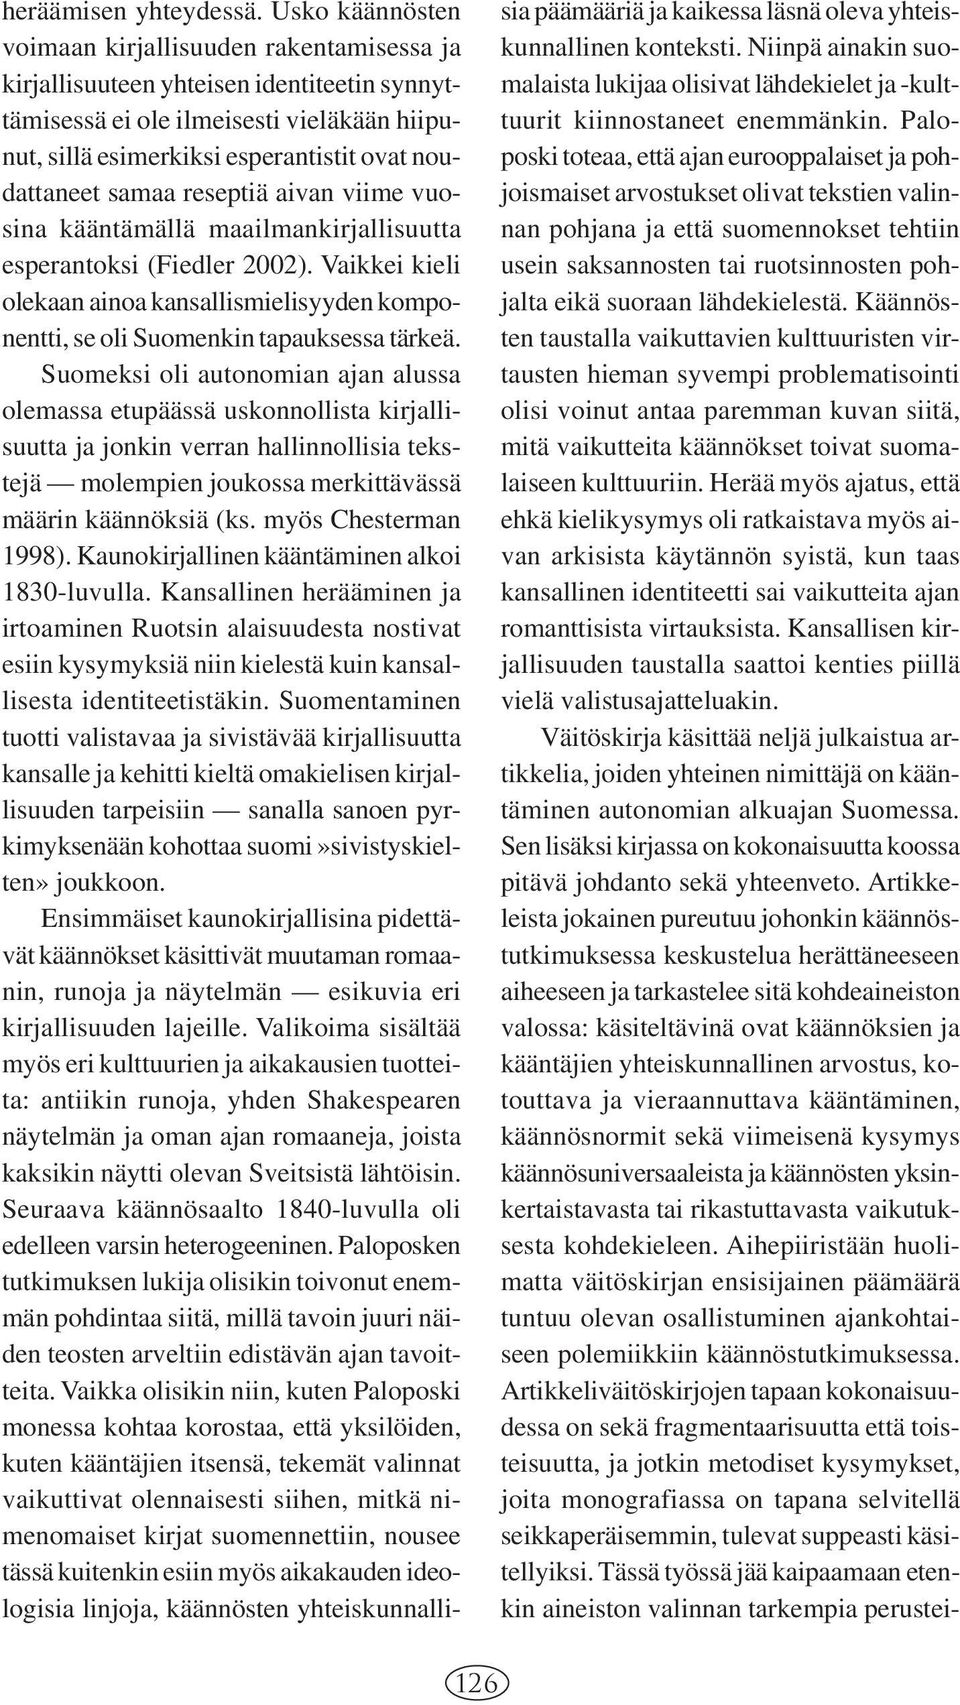 samaa reseptiä aivan viime vuosina kääntämällä maailmankirjallisuutta esperantoksi (Fiedler 2002). Vaikkei kieli olekaan ainoa kansallismielisyyden komponentti, se oli Suomenkin tapauksessa tärkeä.